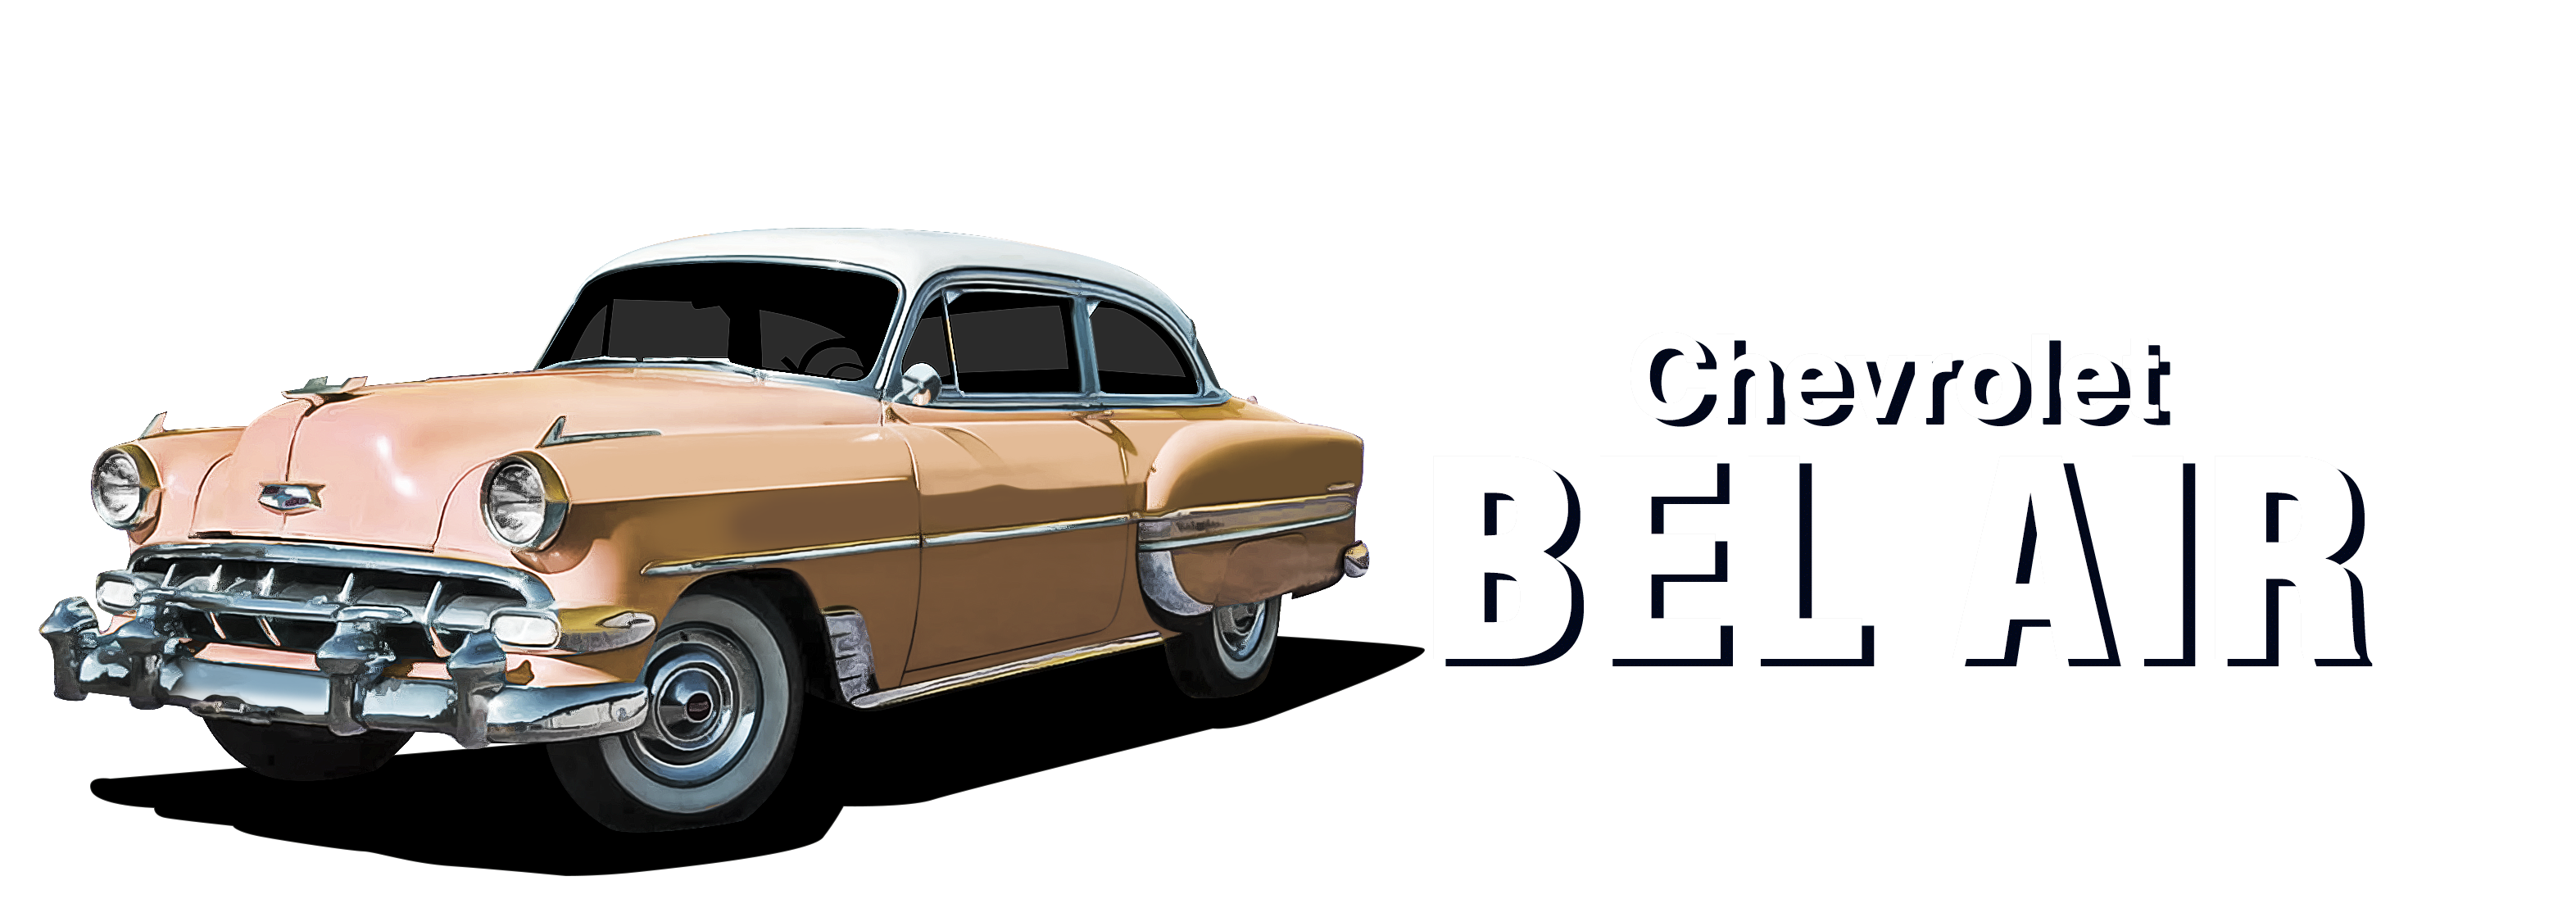 1950-1954 Chevy BelAir